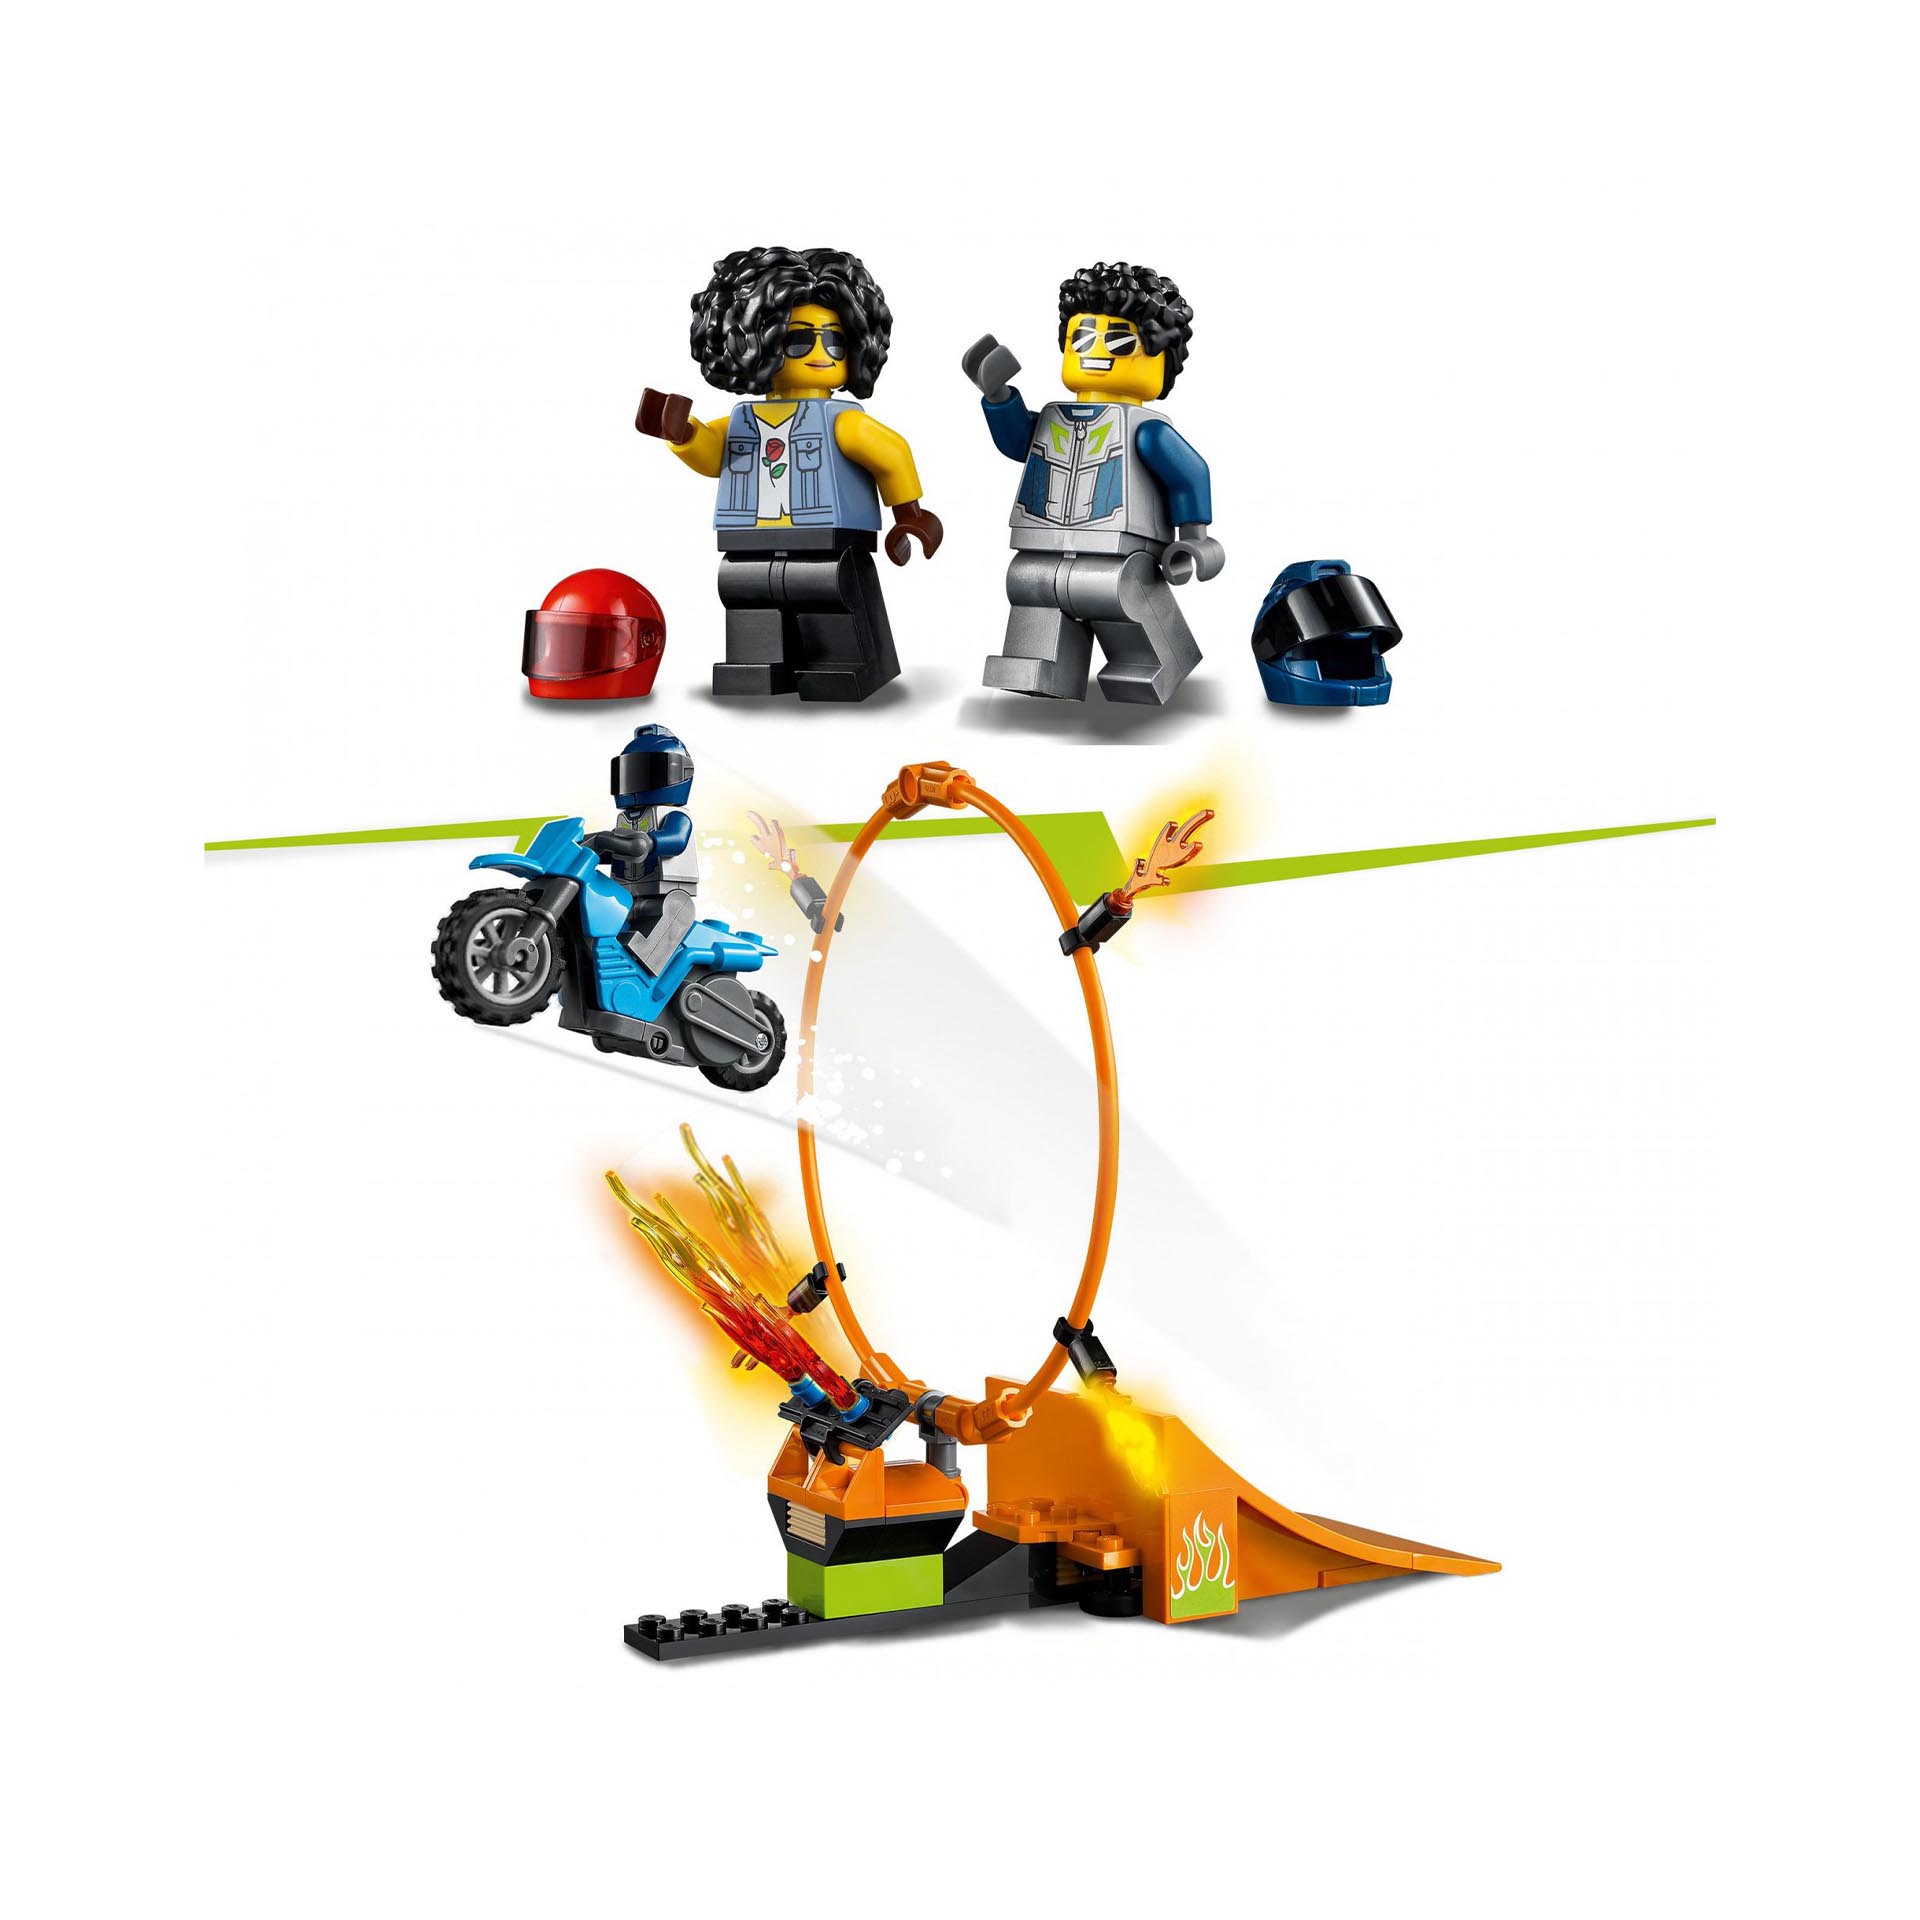 LEGO City Stuntz Competizione Acrobatica, Set con 2 Moto Giocattolo con Meccanis 60299, , large